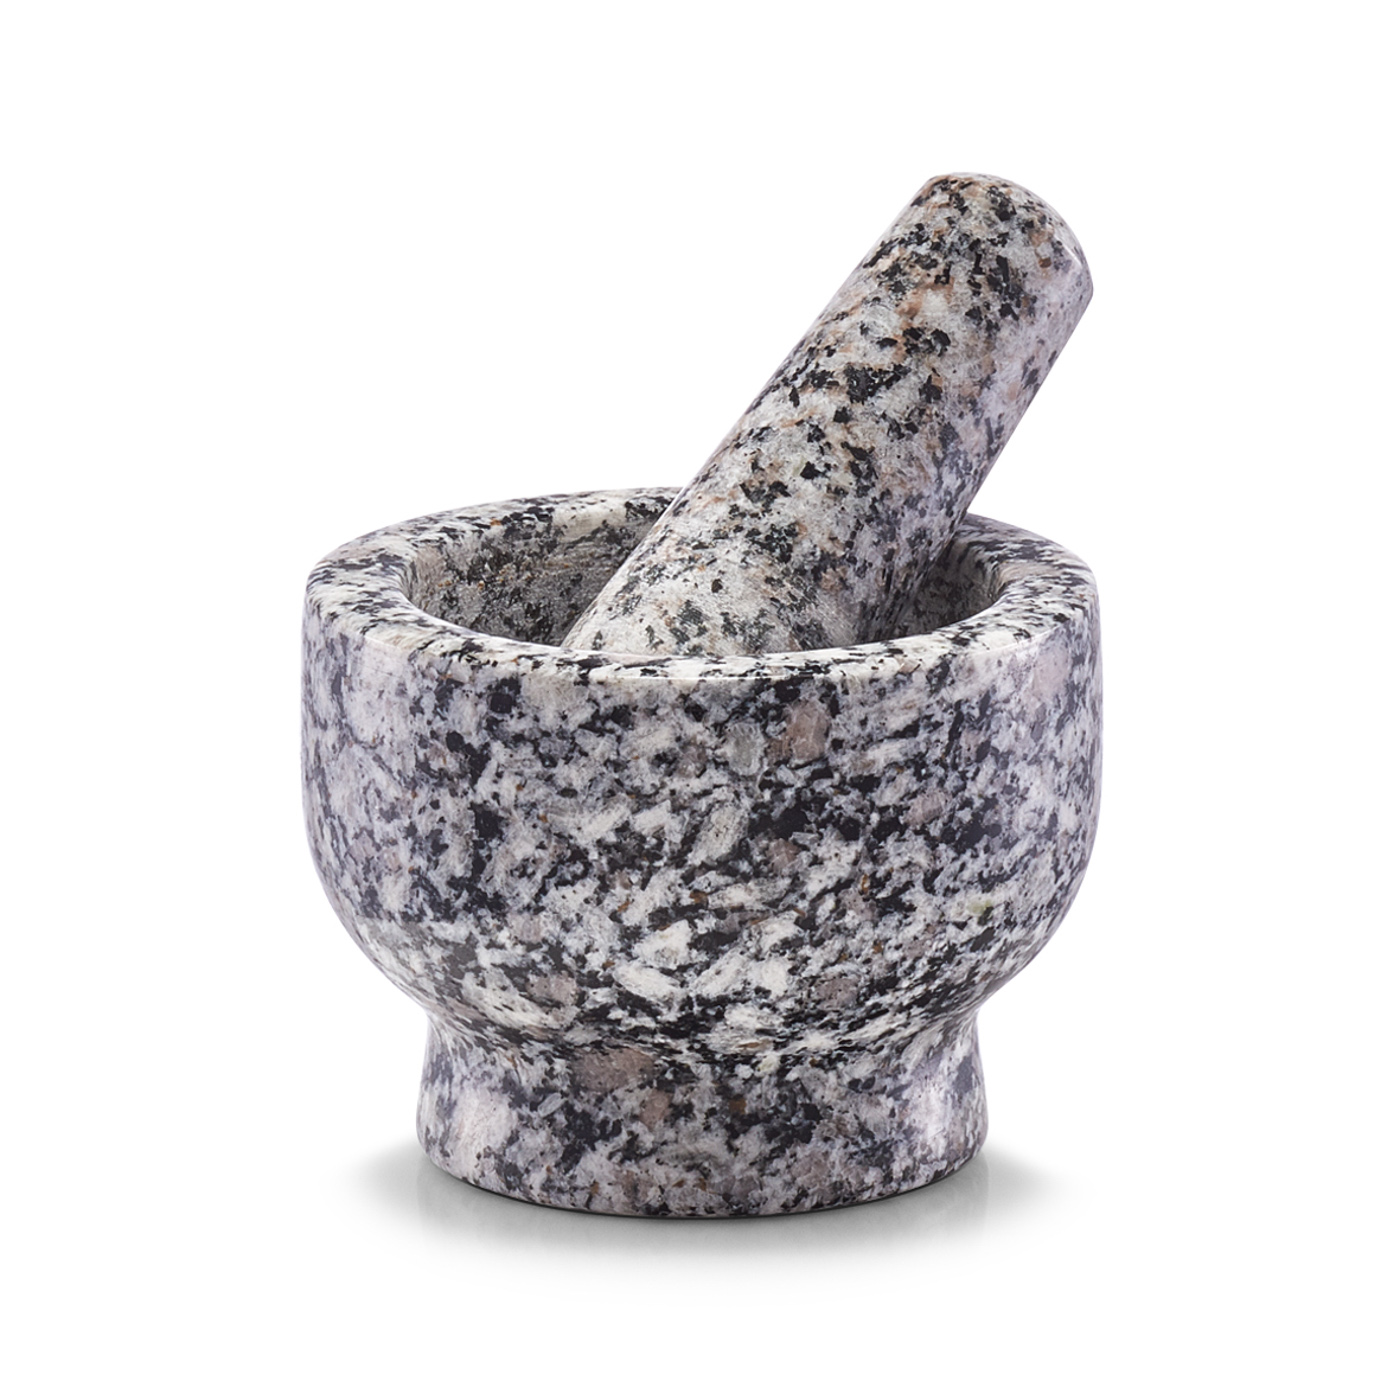 Mörser & Stößel-Set, Granit, Ø9x6,5 cm. Farbe: grau. Fassungsvermögen: 100 ml. Dieses hochwertige Mörser & Stößel-Set wurde aus Granit